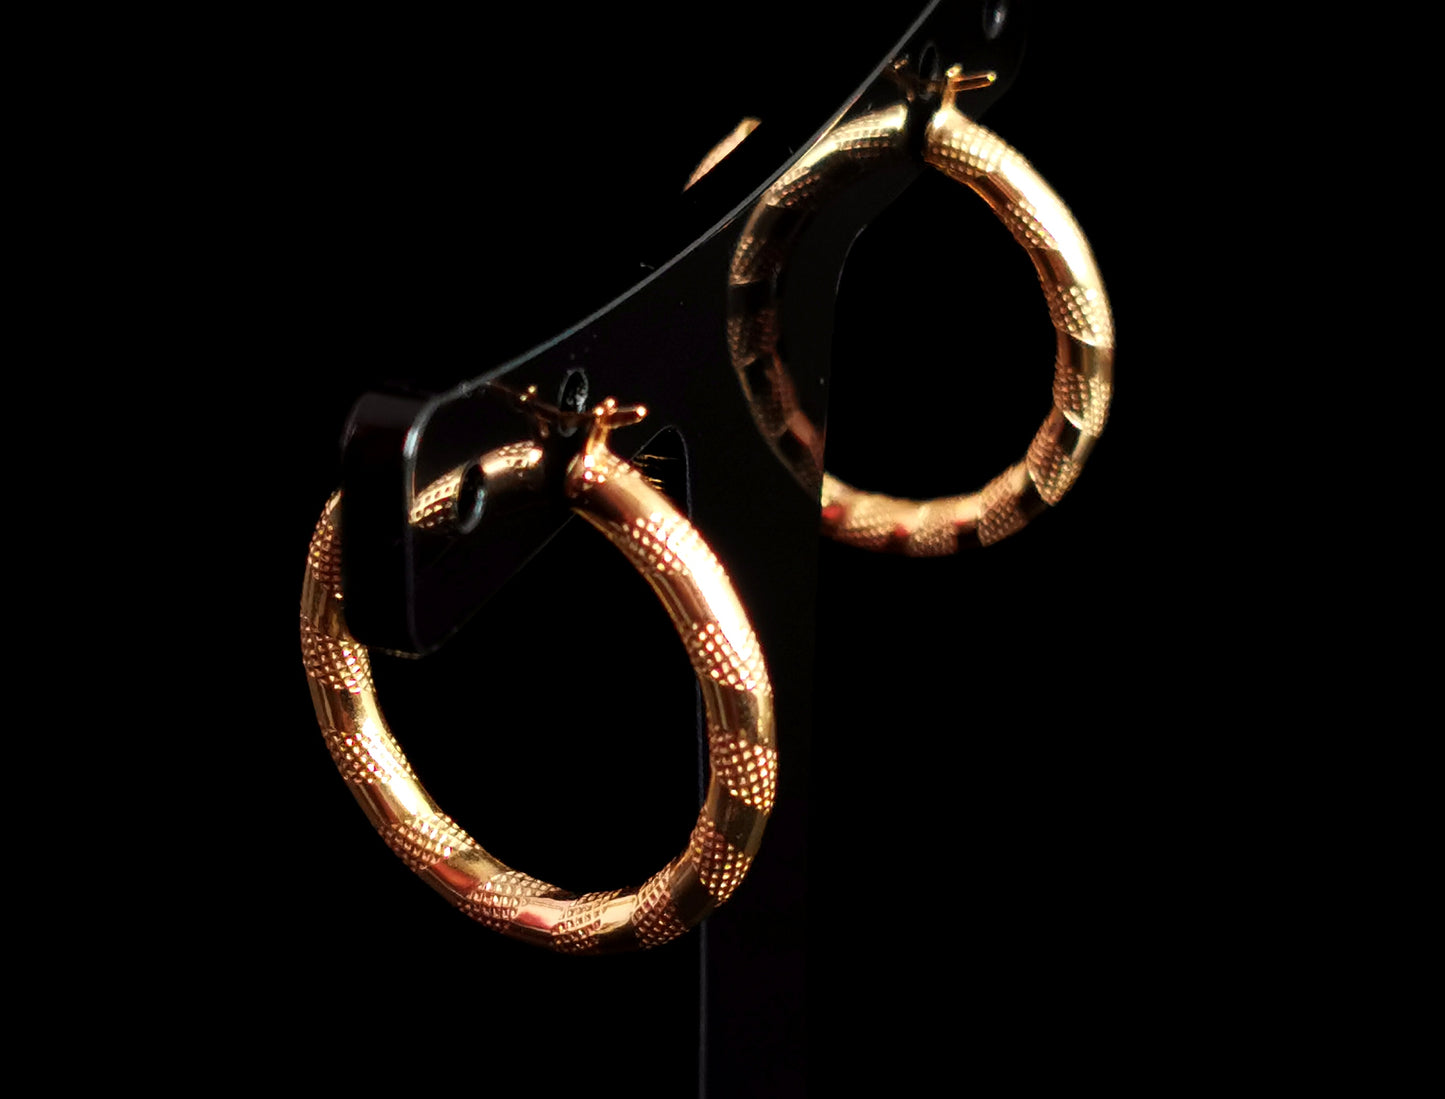 Vintage 9ct gold hoop earrings, textured